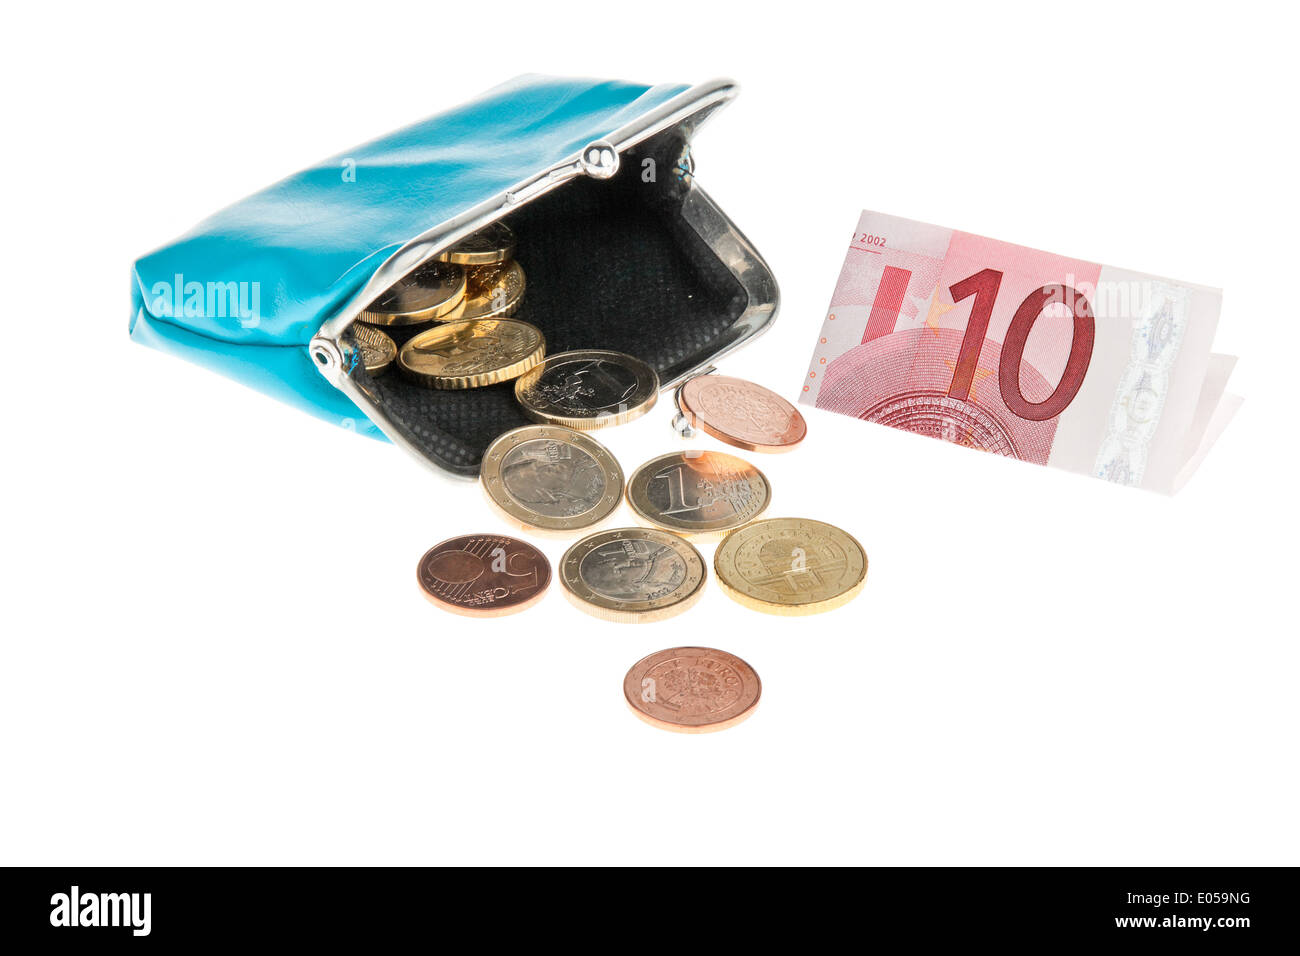 A change purse with euro of bank notes and coins, Eine Geldboerse mit Euro Geldscheinen und Muenzen Stock Photo